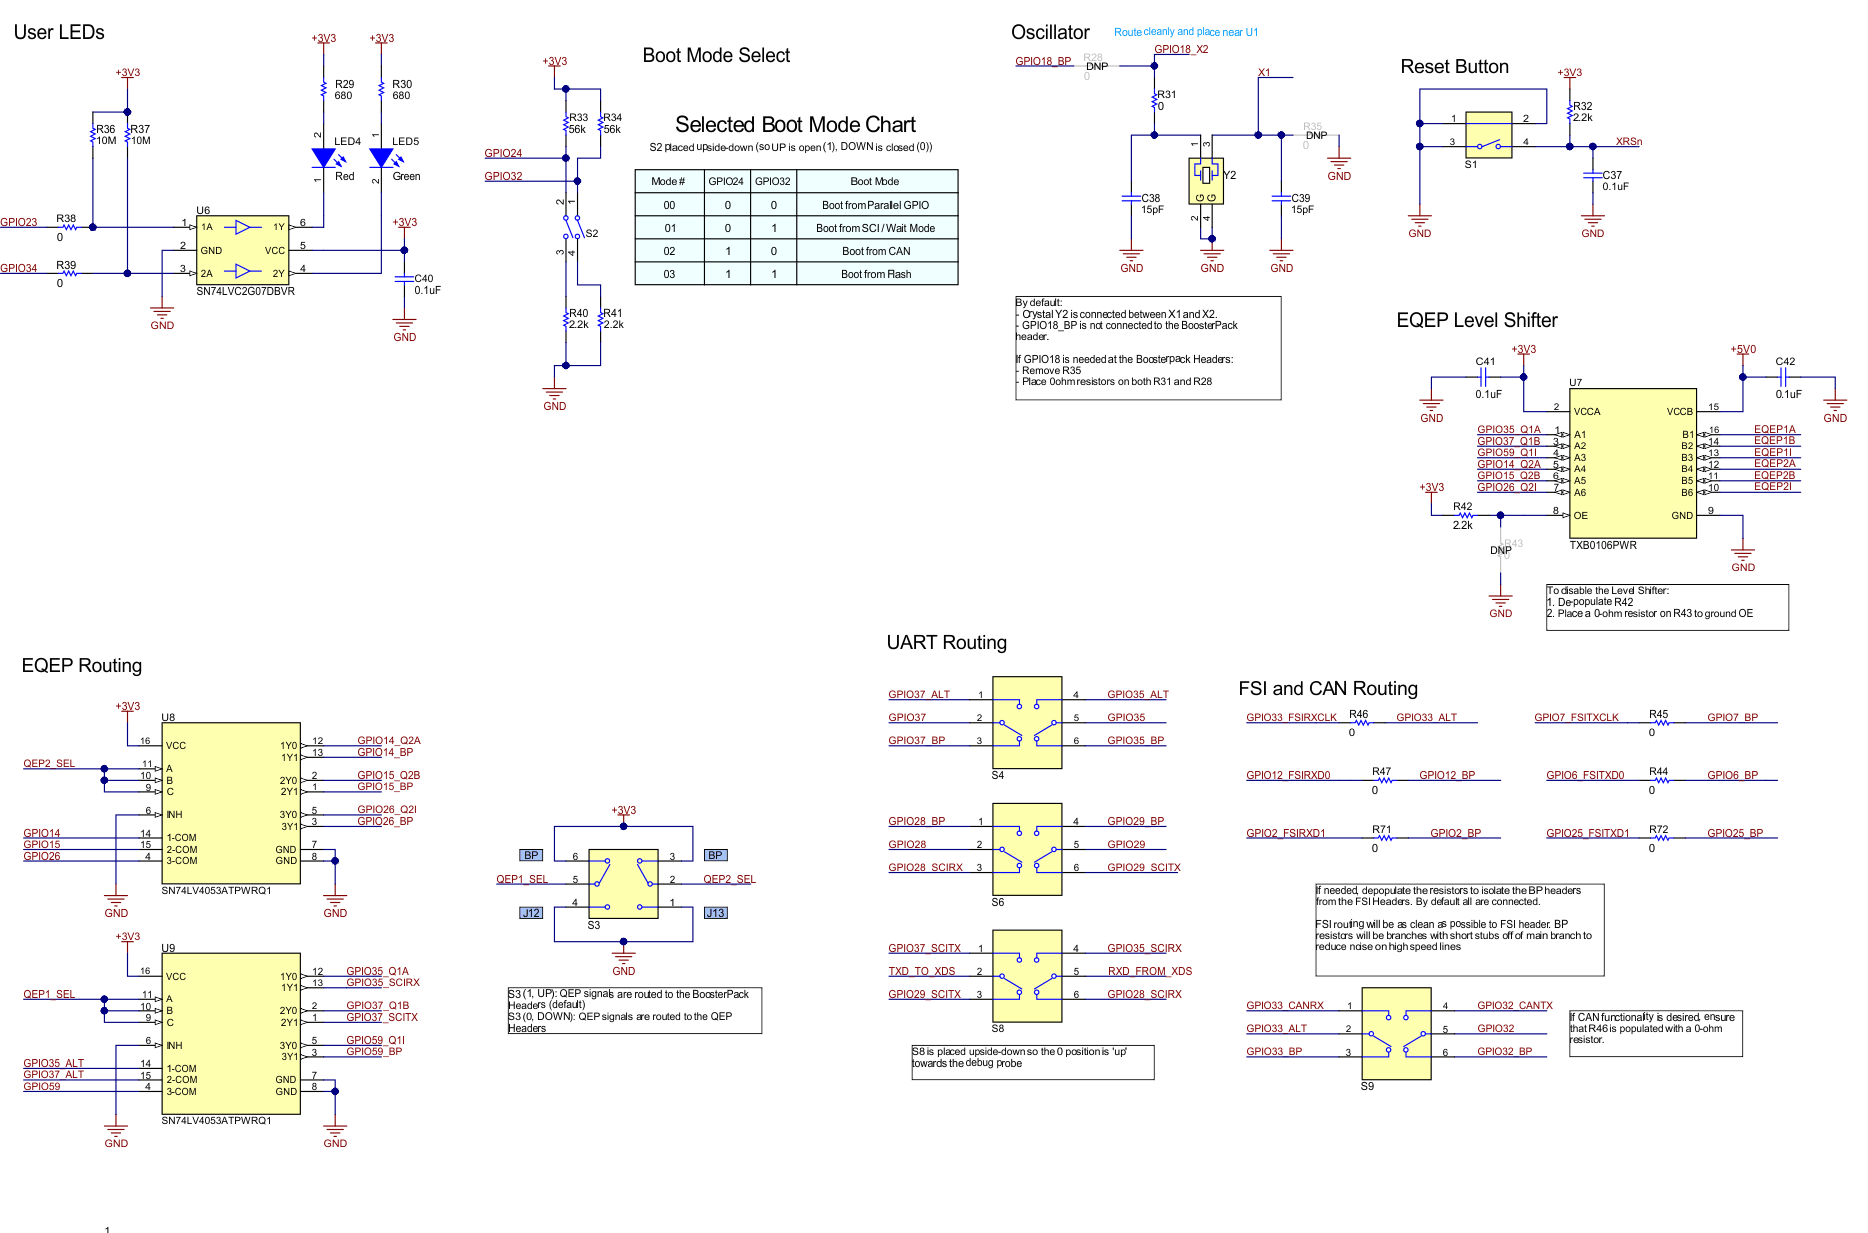 spruii7-mcu025b-001-schematic-3-alt-routing-misc.gif